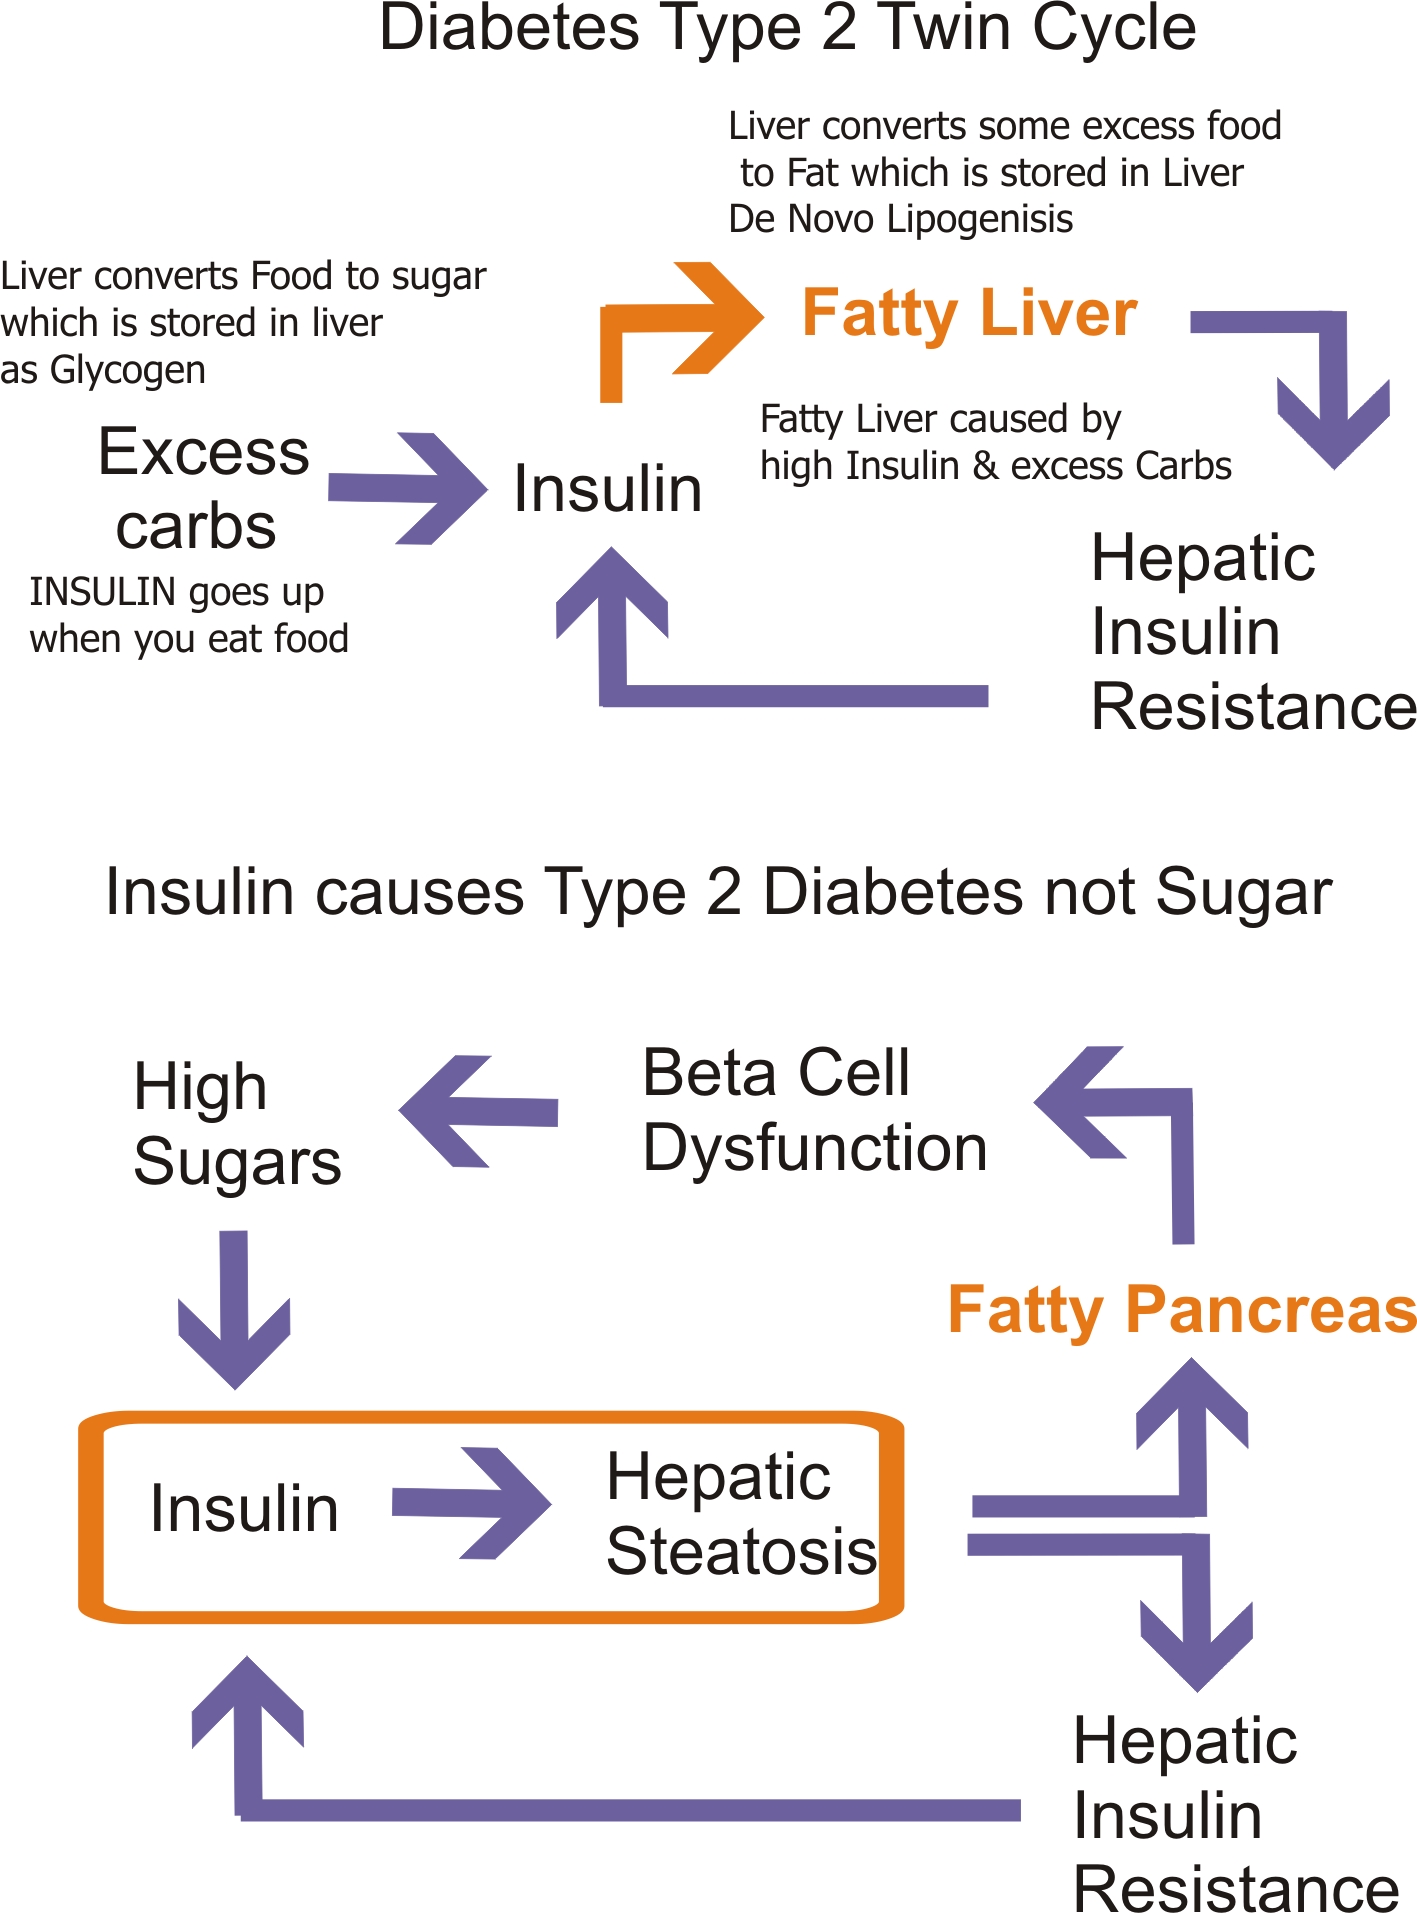 Diabetes type 2 twin cycle.jpg